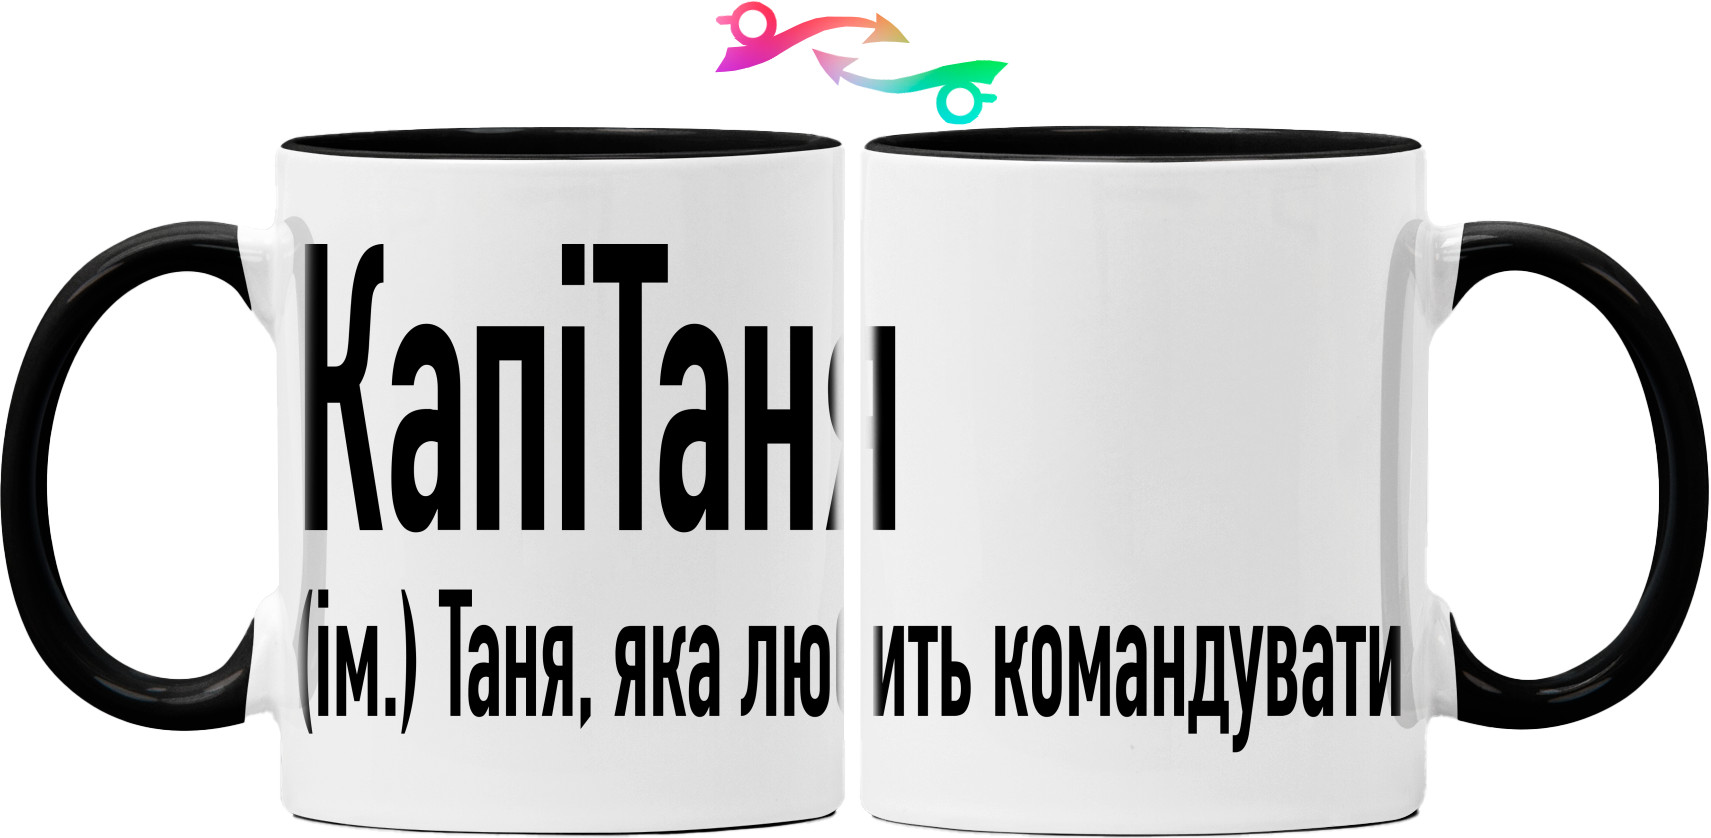  Tatiana - Cup 325ml - Таня  яка любить командувати - Mfest